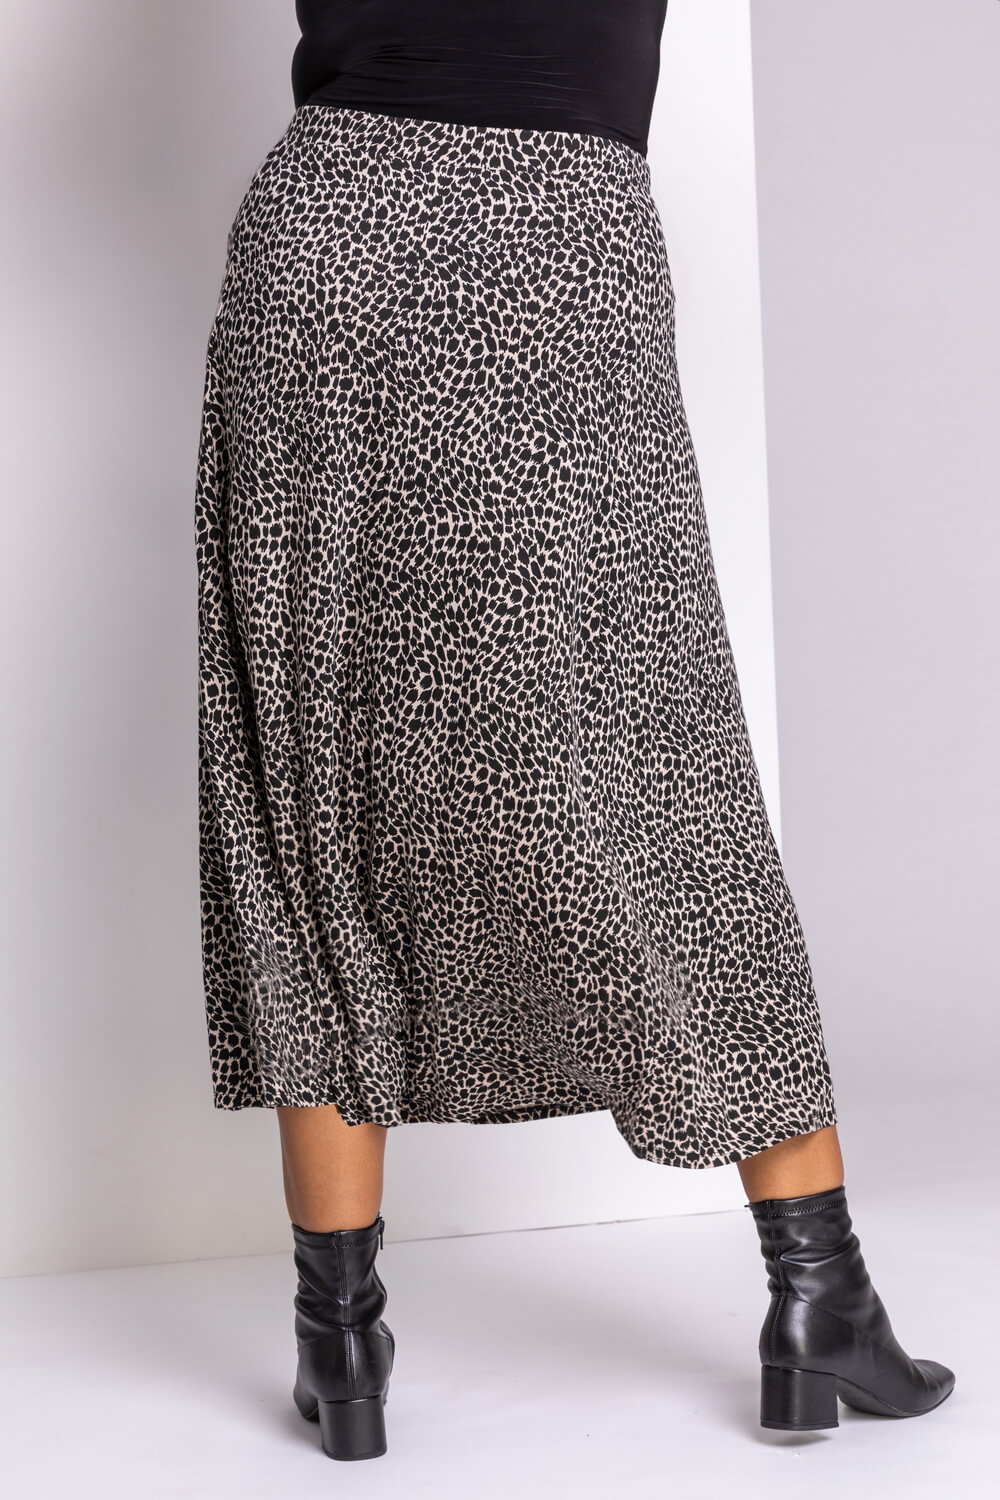 Beige Curve Animal Print Midi Skirt, Image 2 of 5